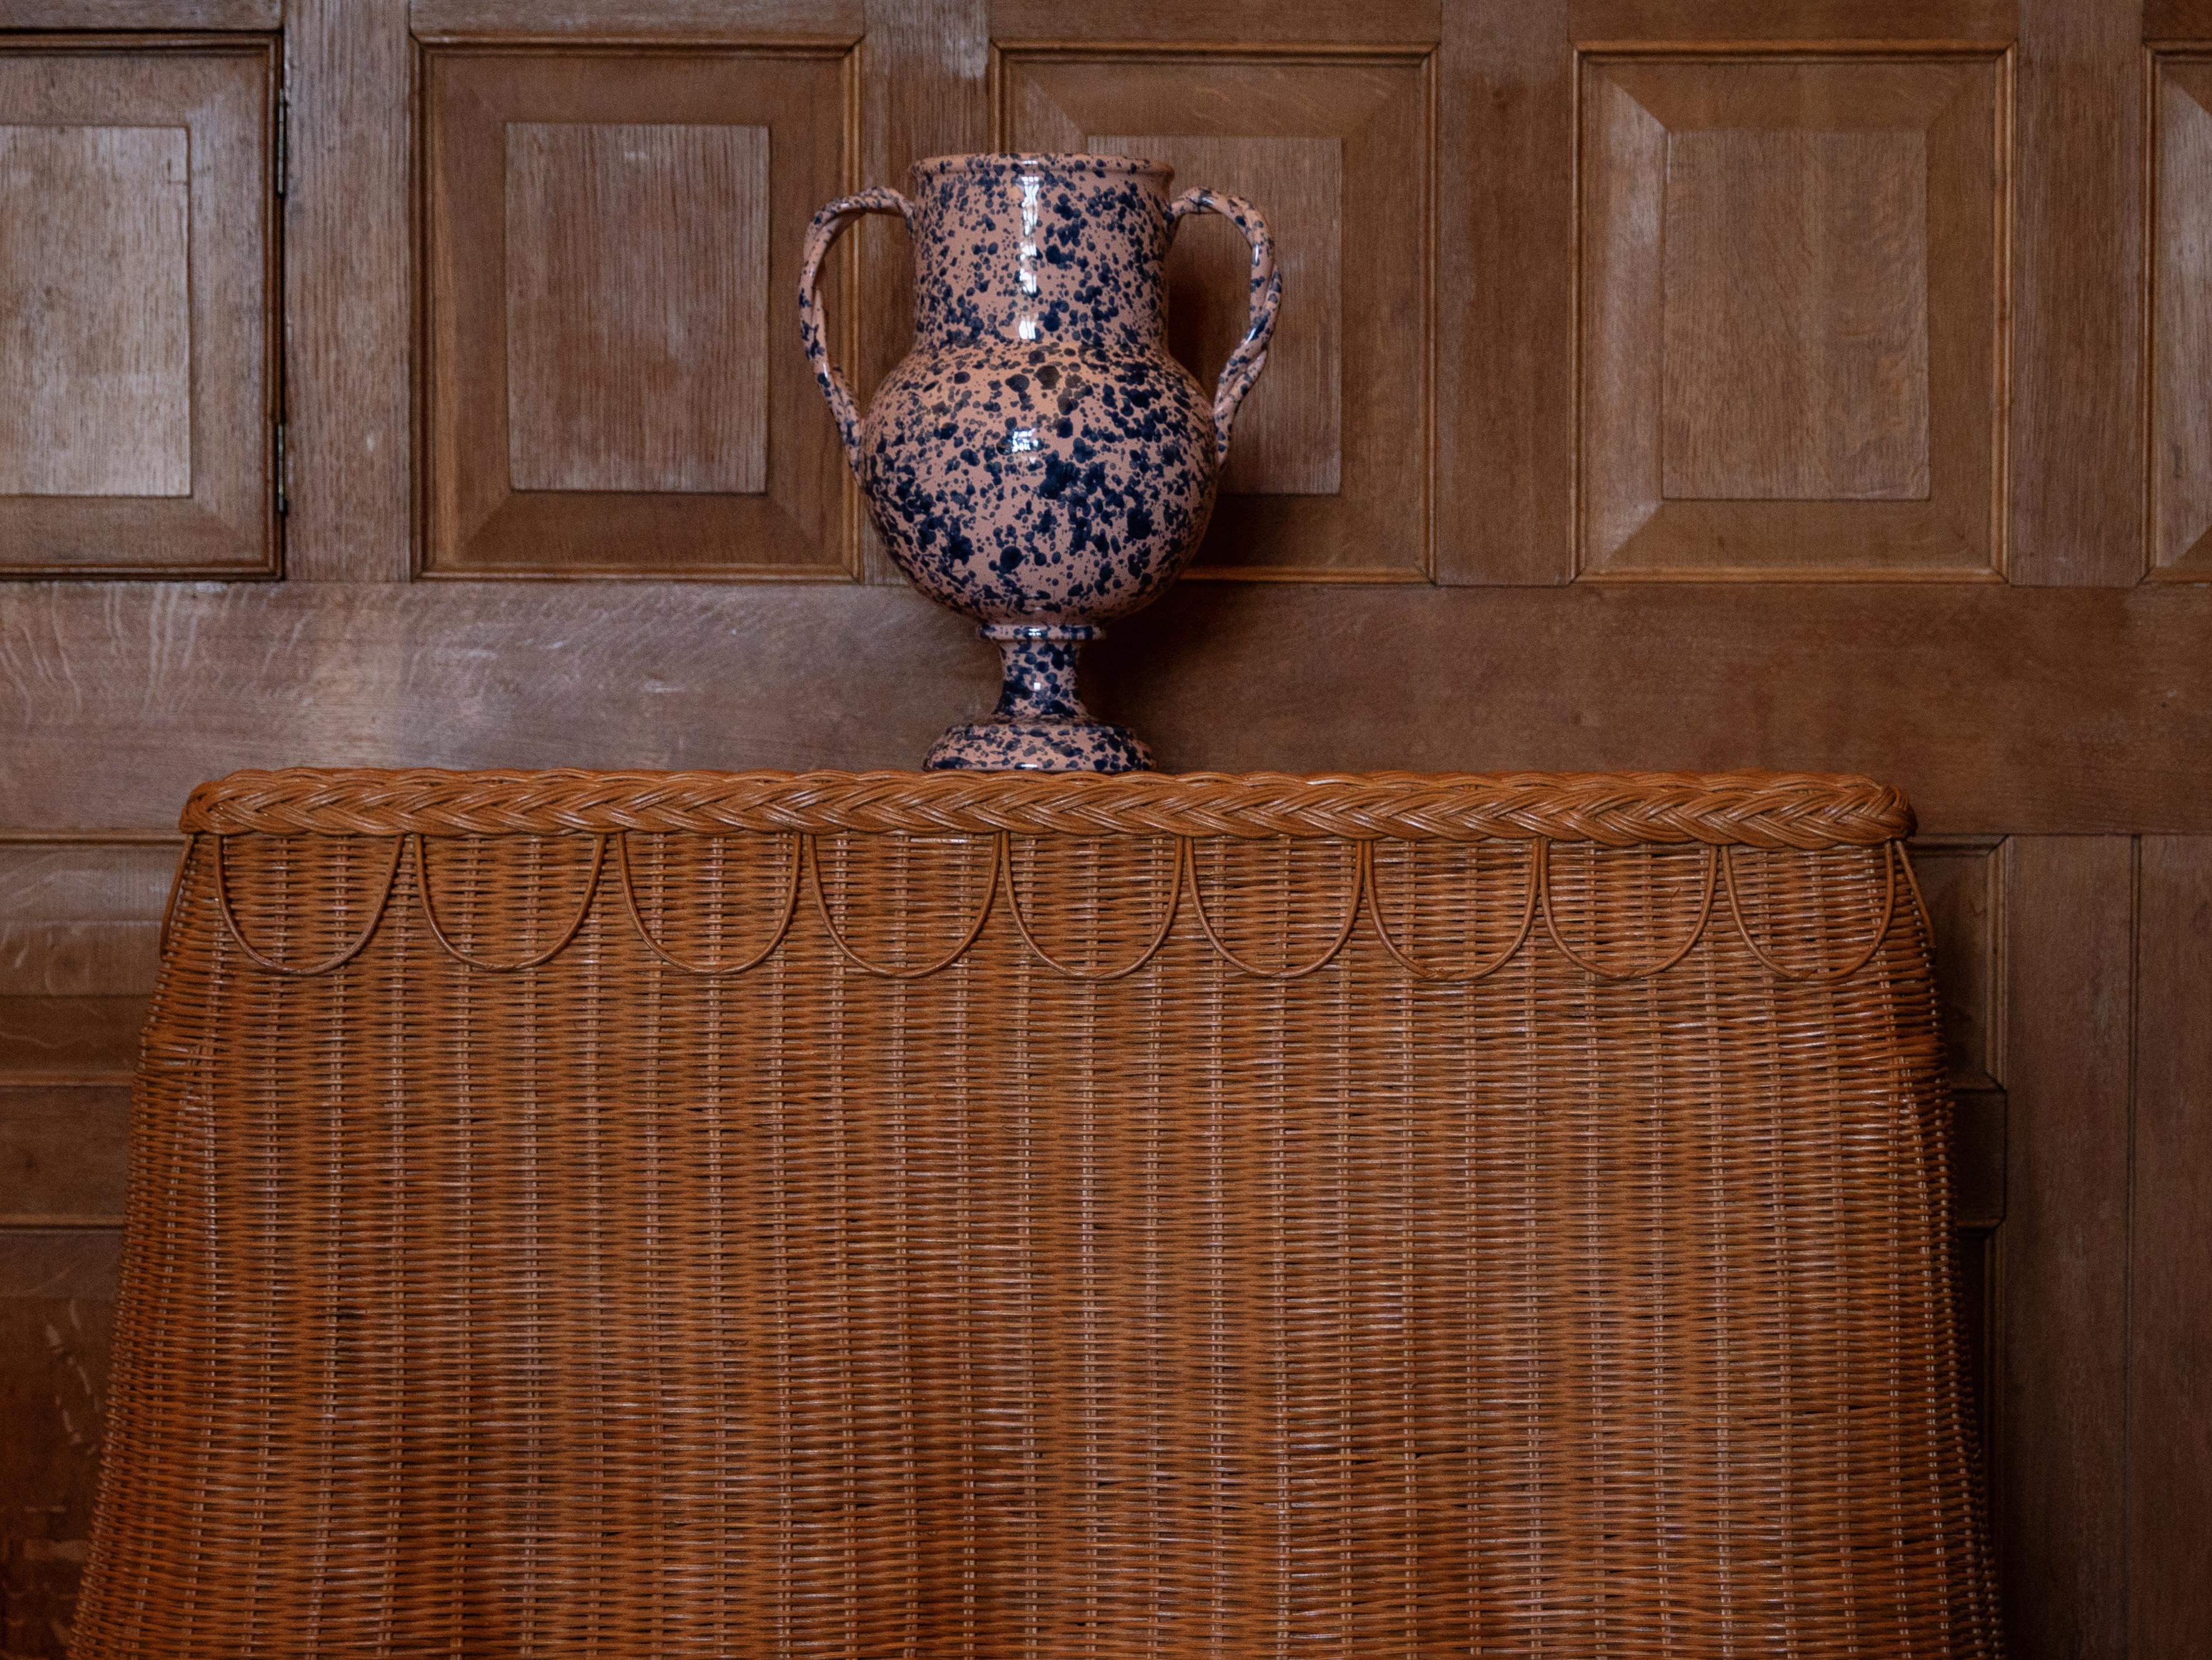 Contemporary Splatter Vase, ceramic, greek urn inspired, Large, Pink and Blue For Sale